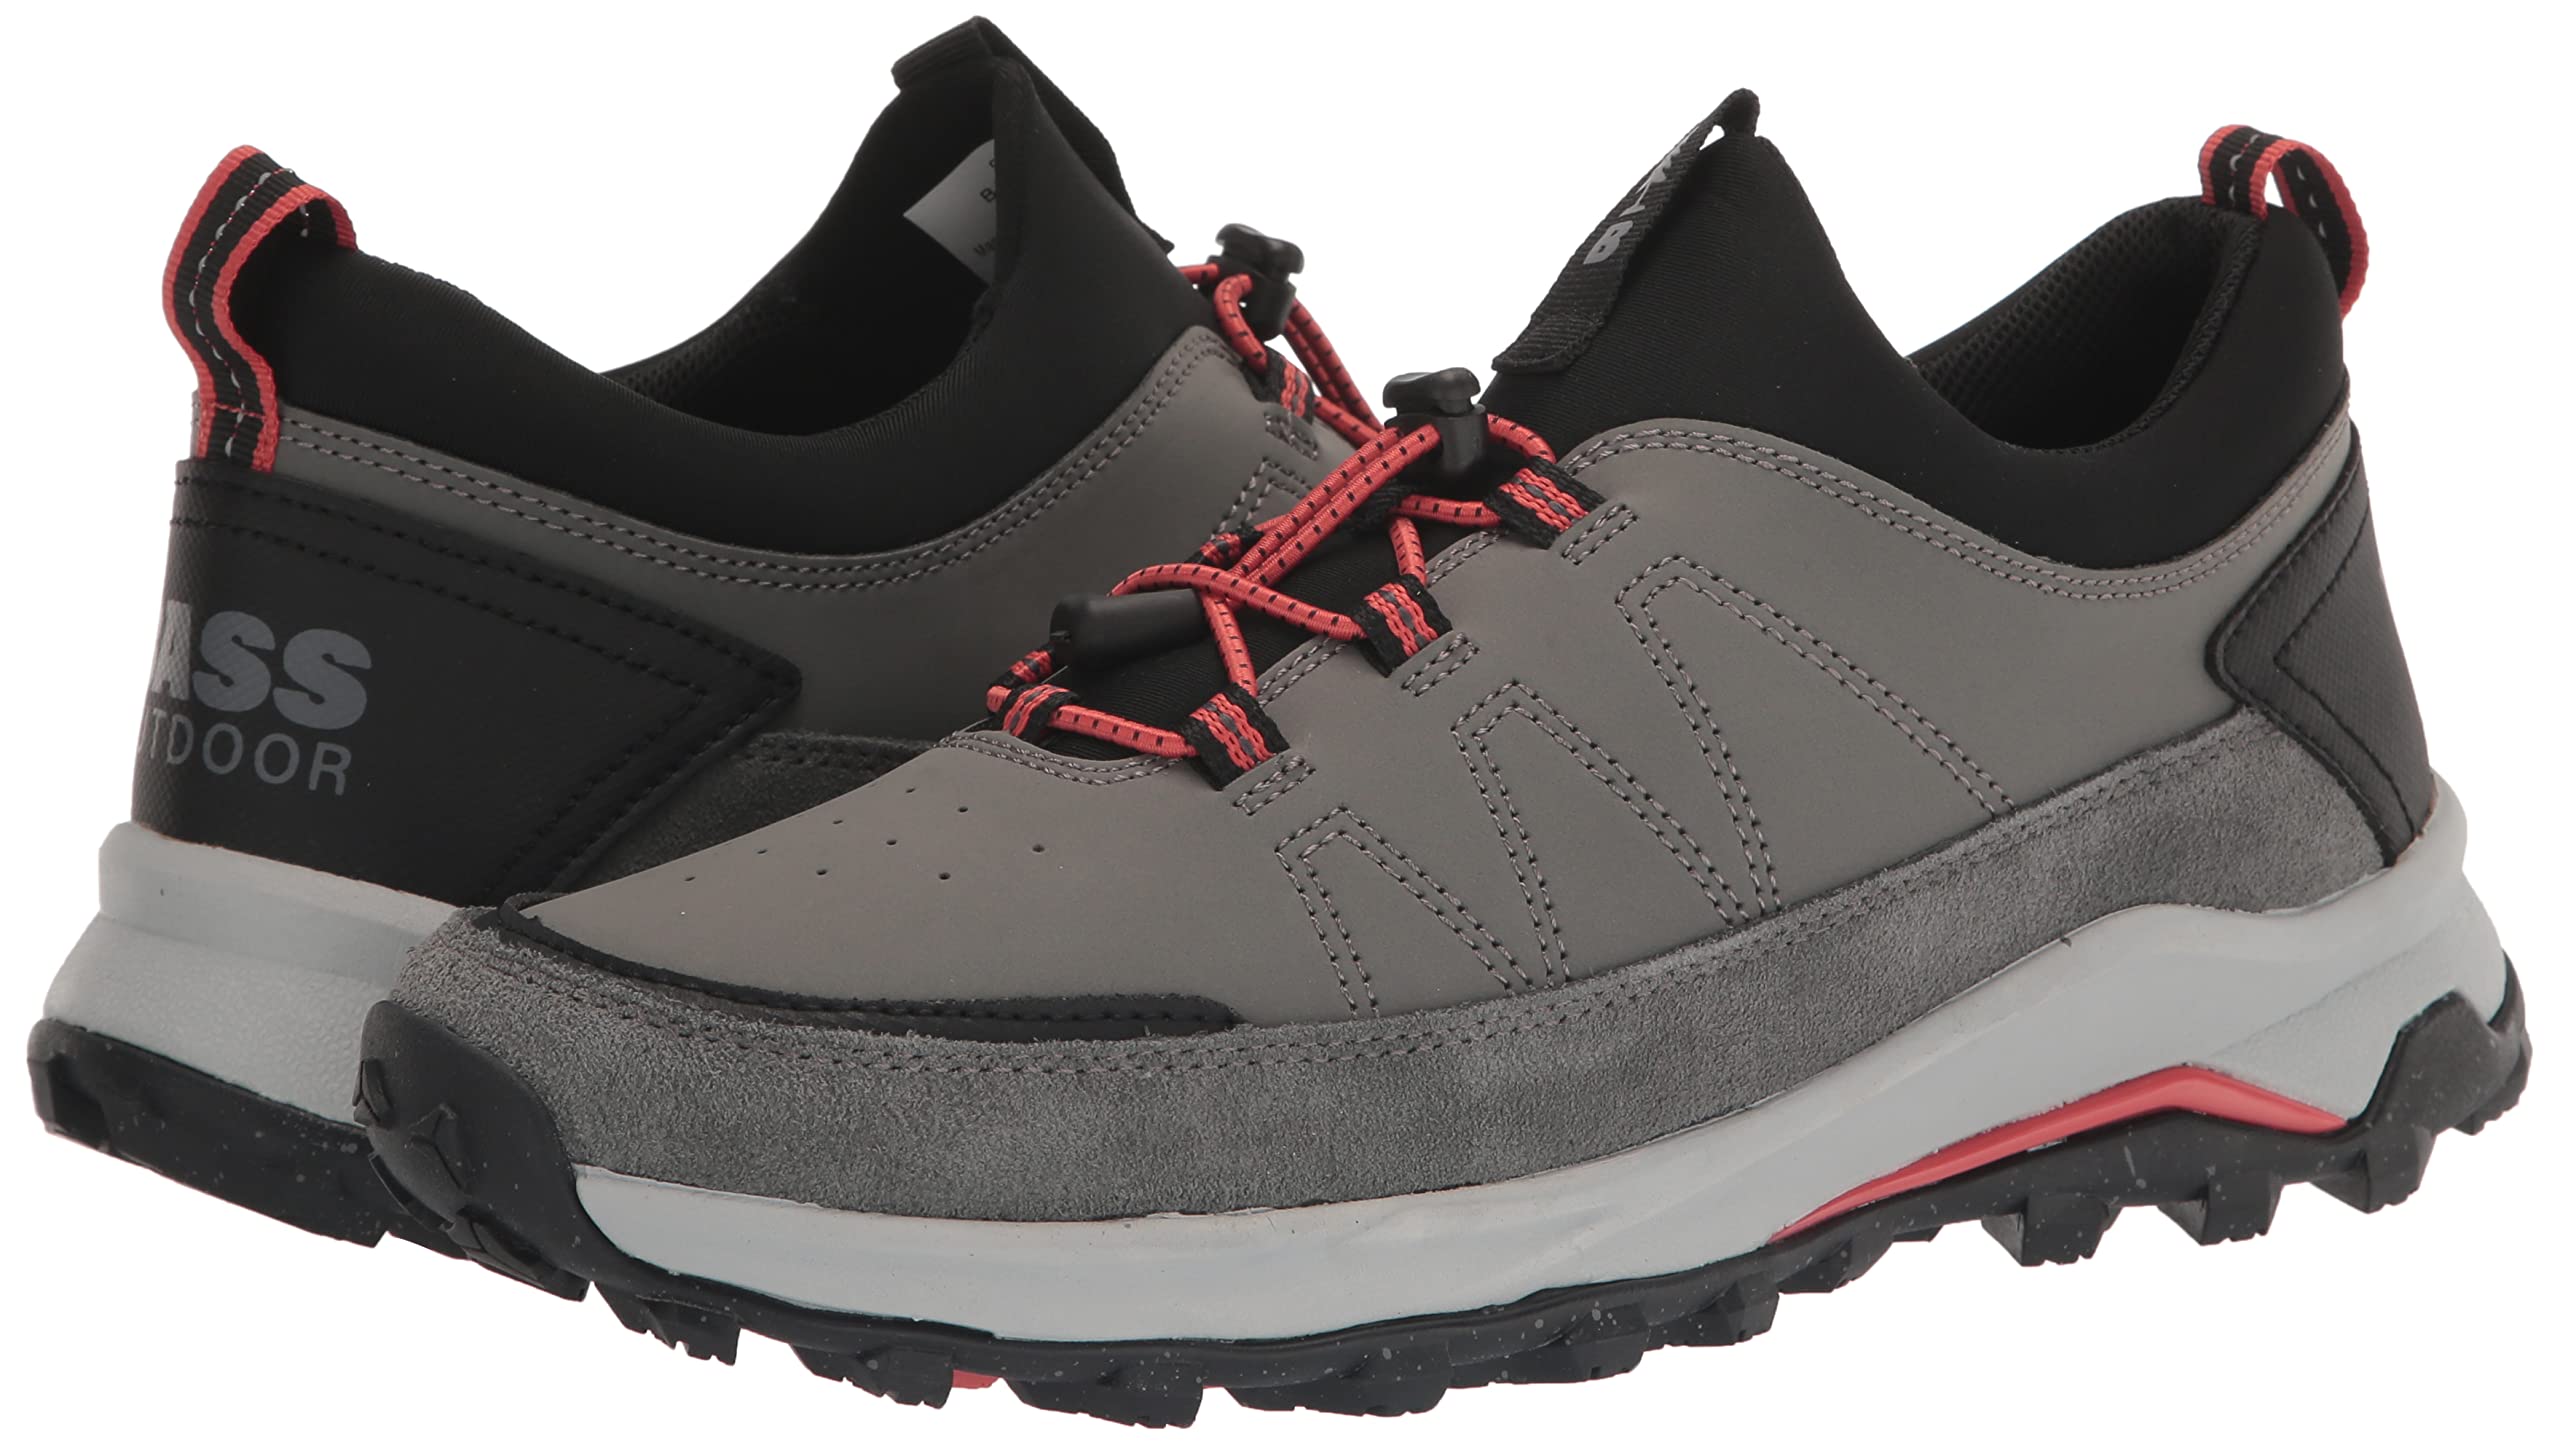 BASS OUTDOOR Men's Trek Stretch Hiker Hiking Shoe